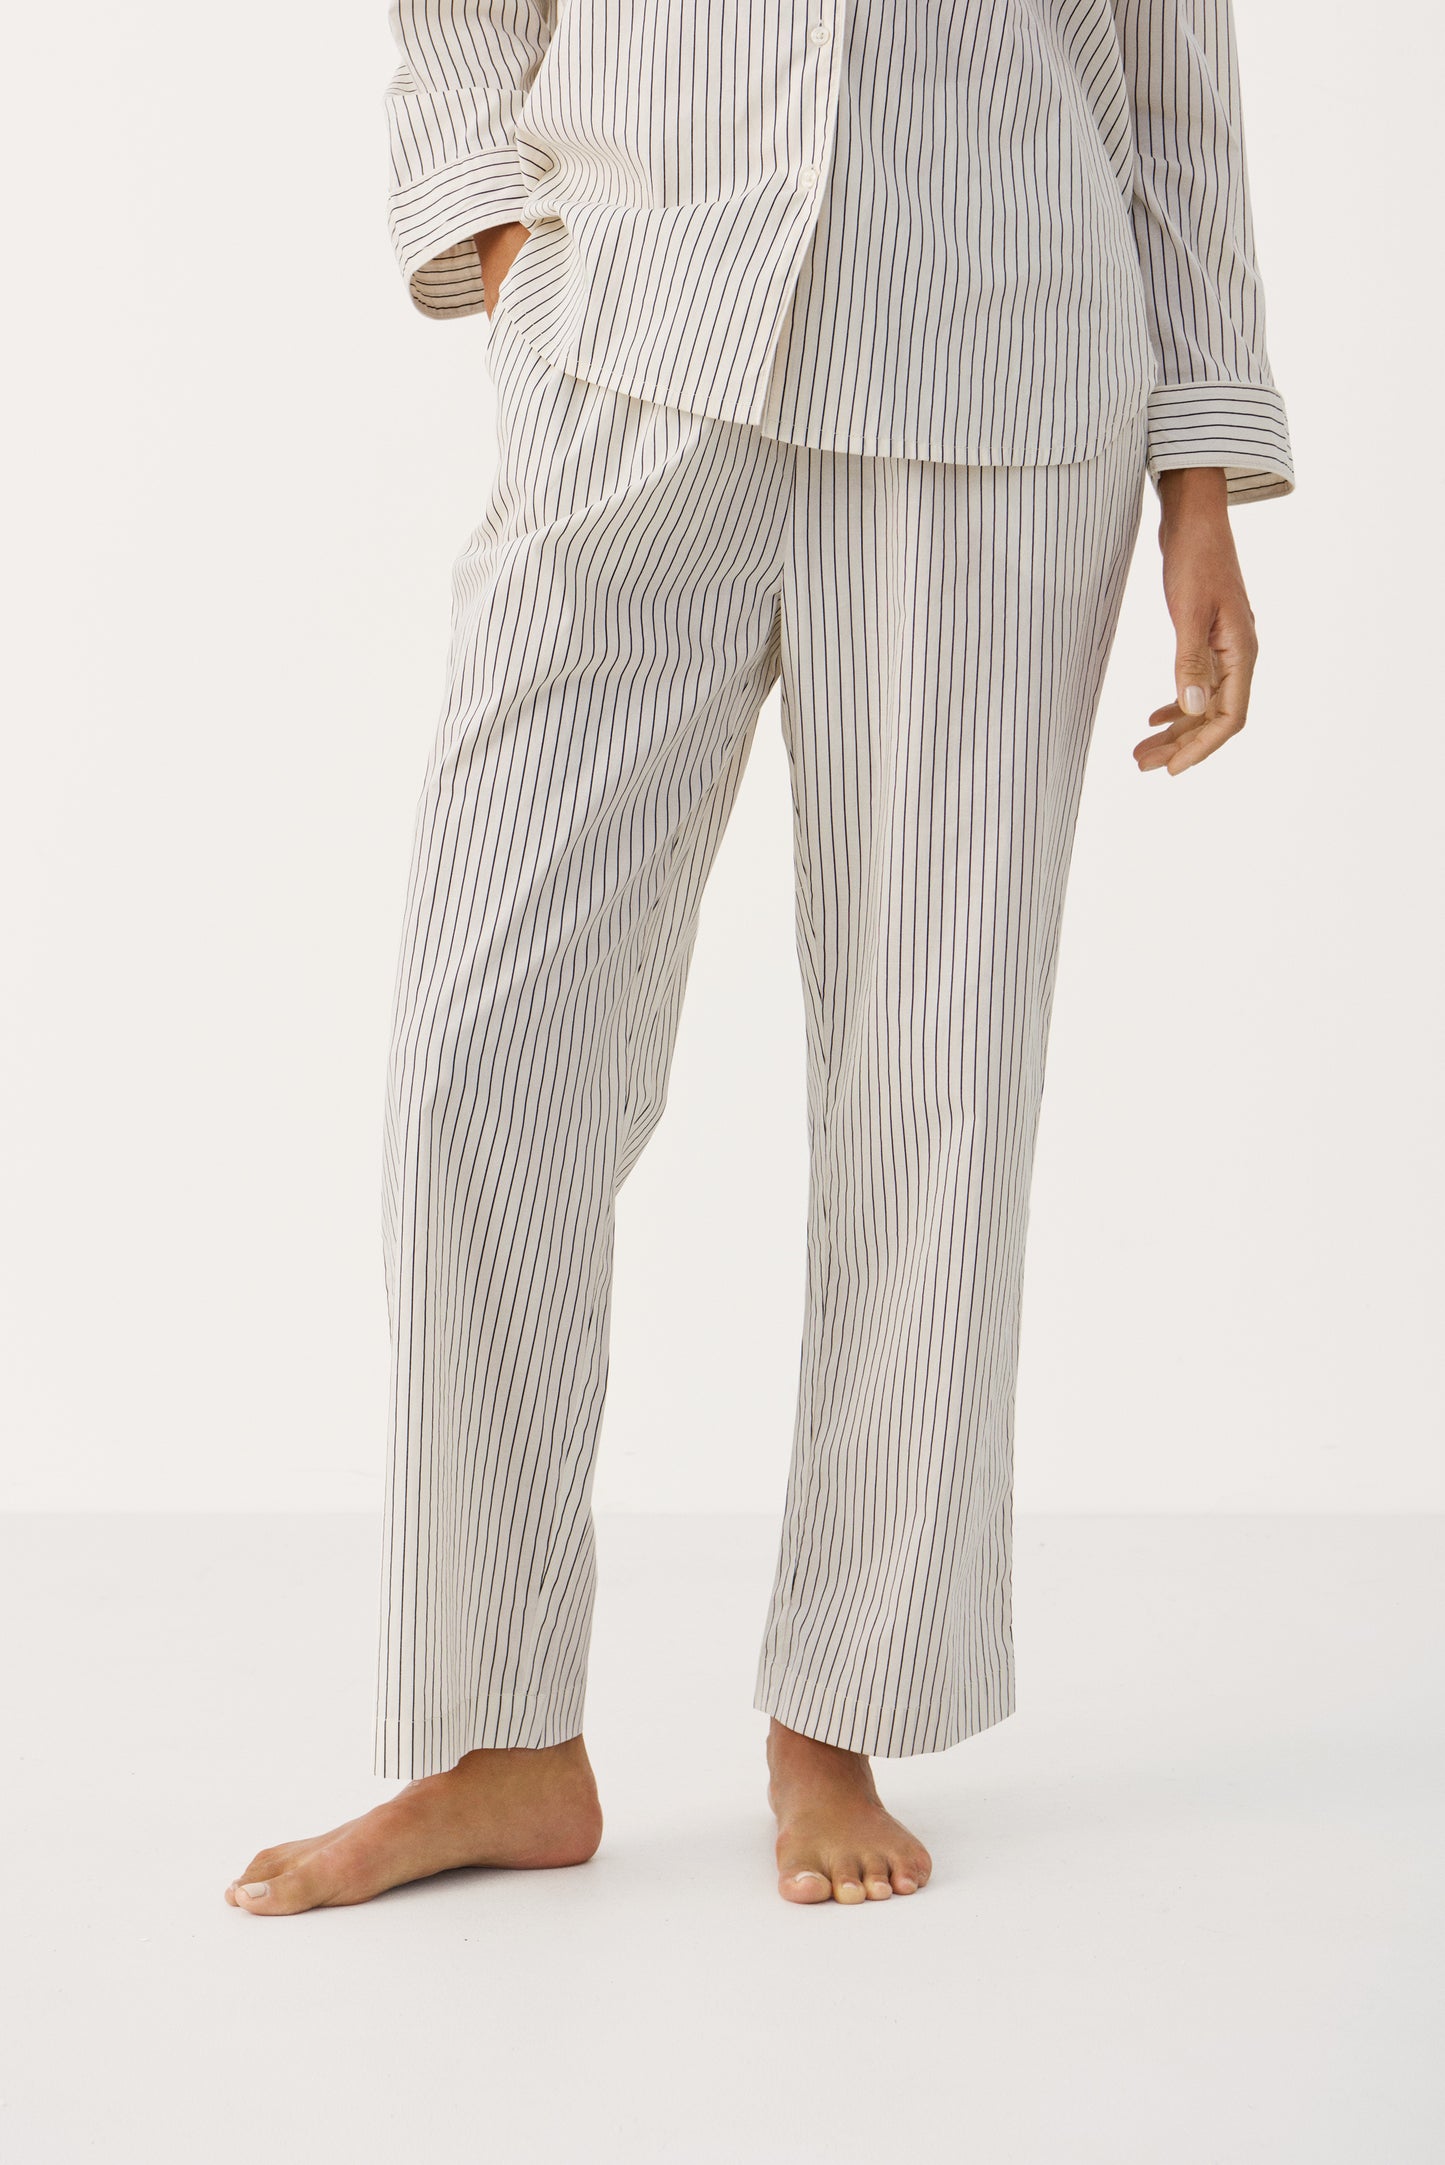 Telma Pajama Set in Dark Navy Stripe